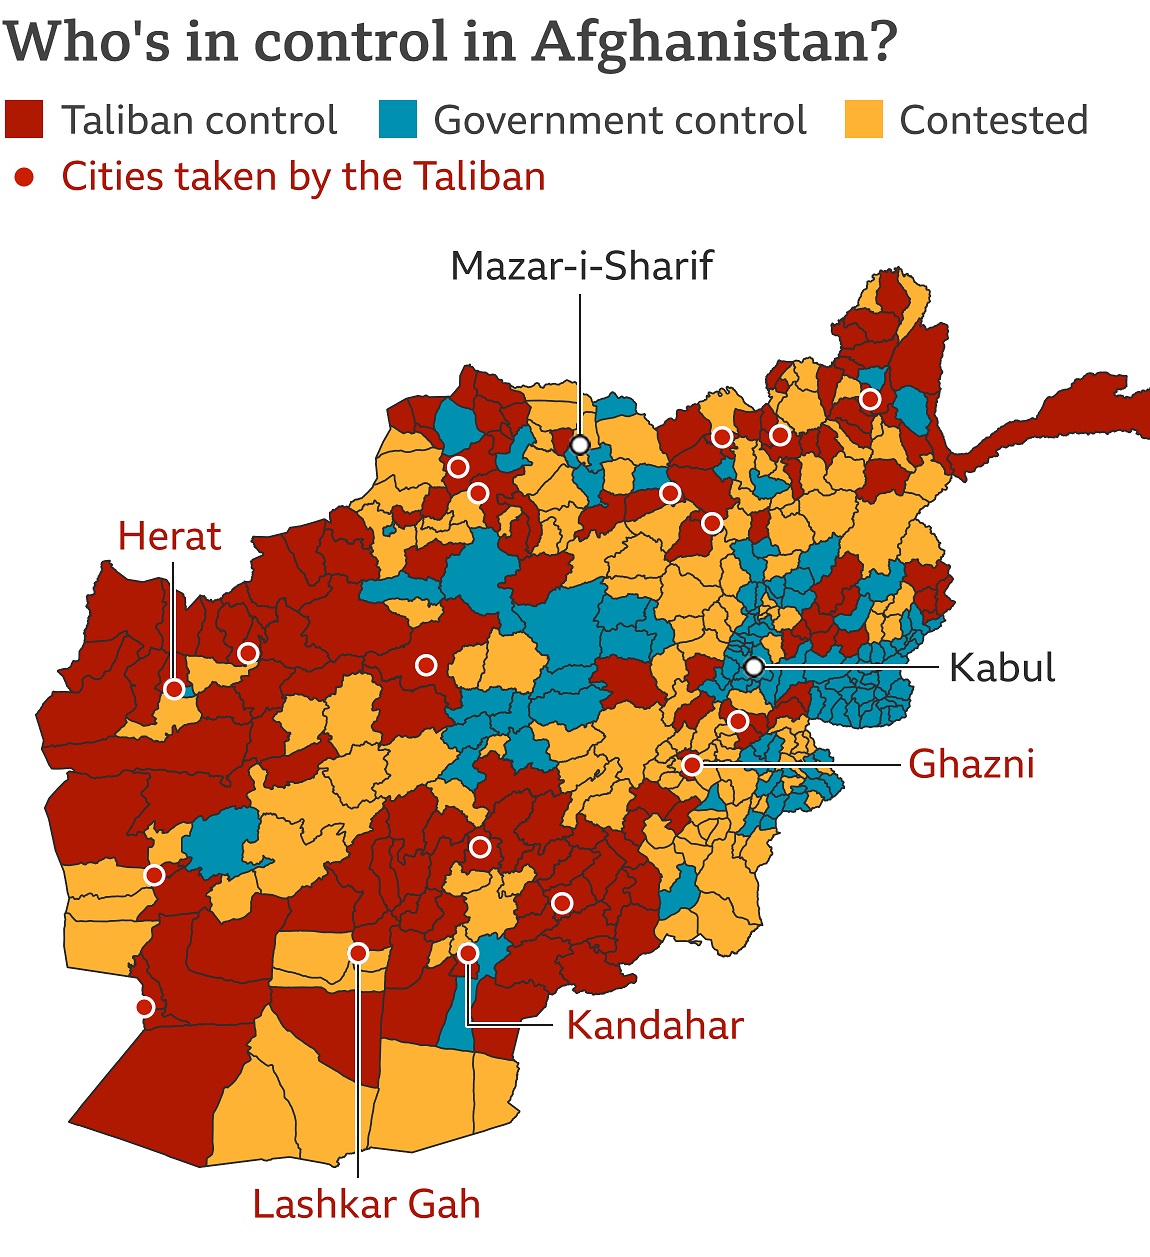 افغان ها یتحت کنترل طالبان